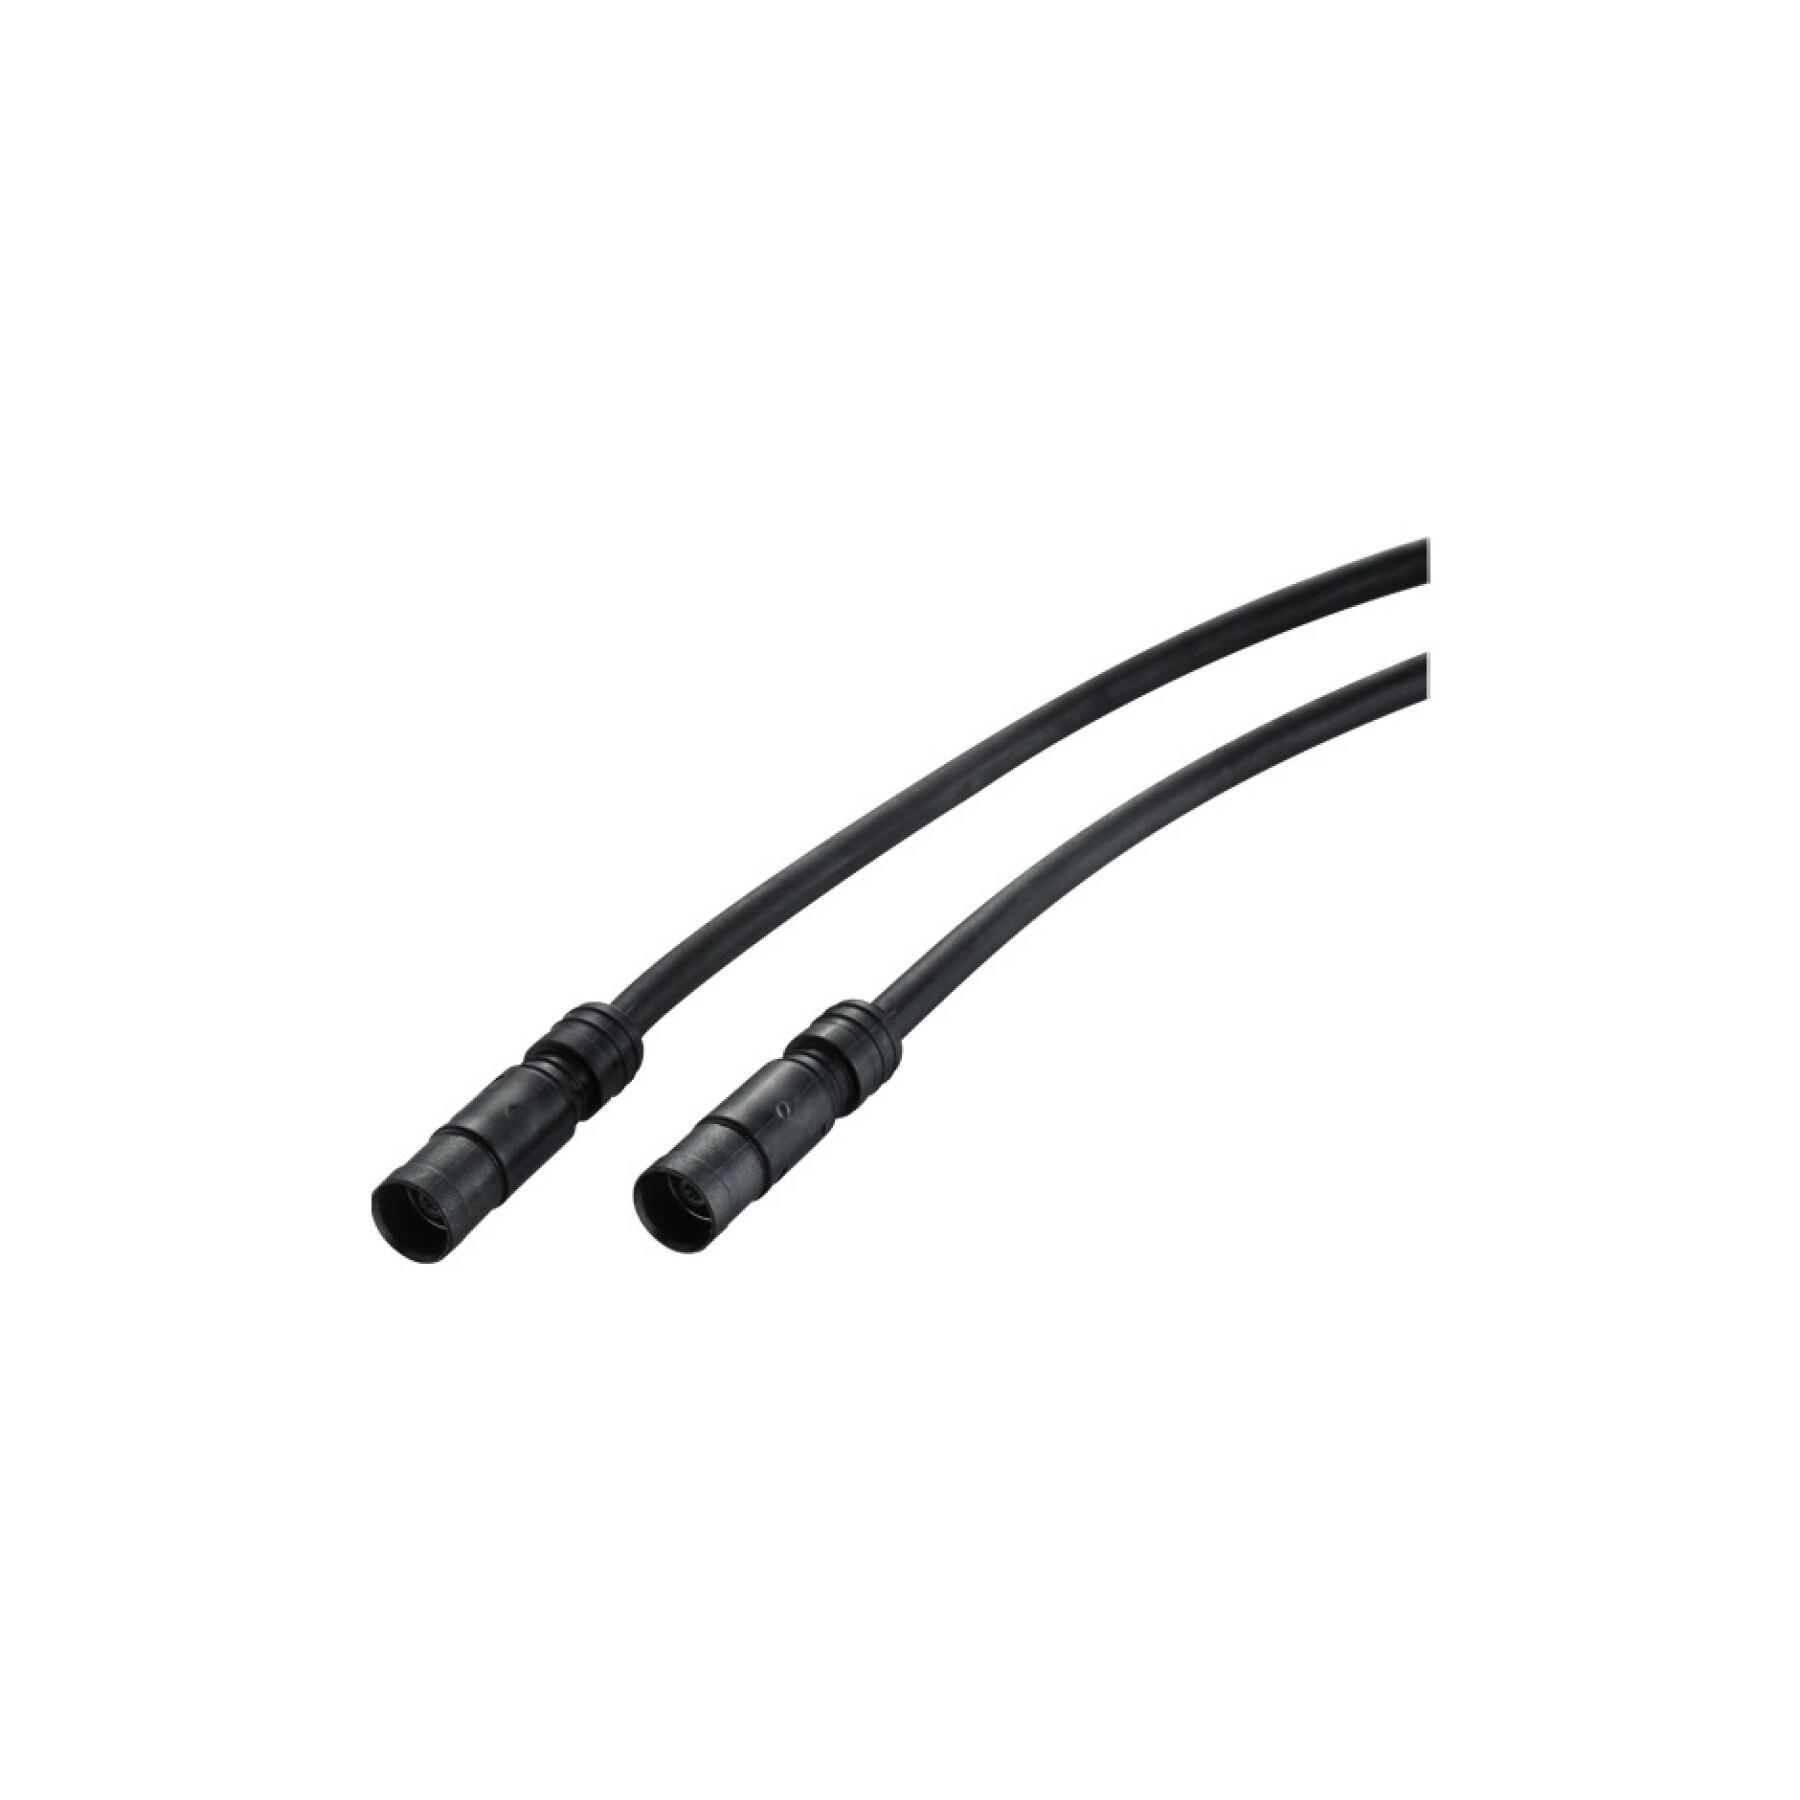 Cable de alimentación Shimano ew-sd50 pour dura ace/ultegra Di2 400 mm